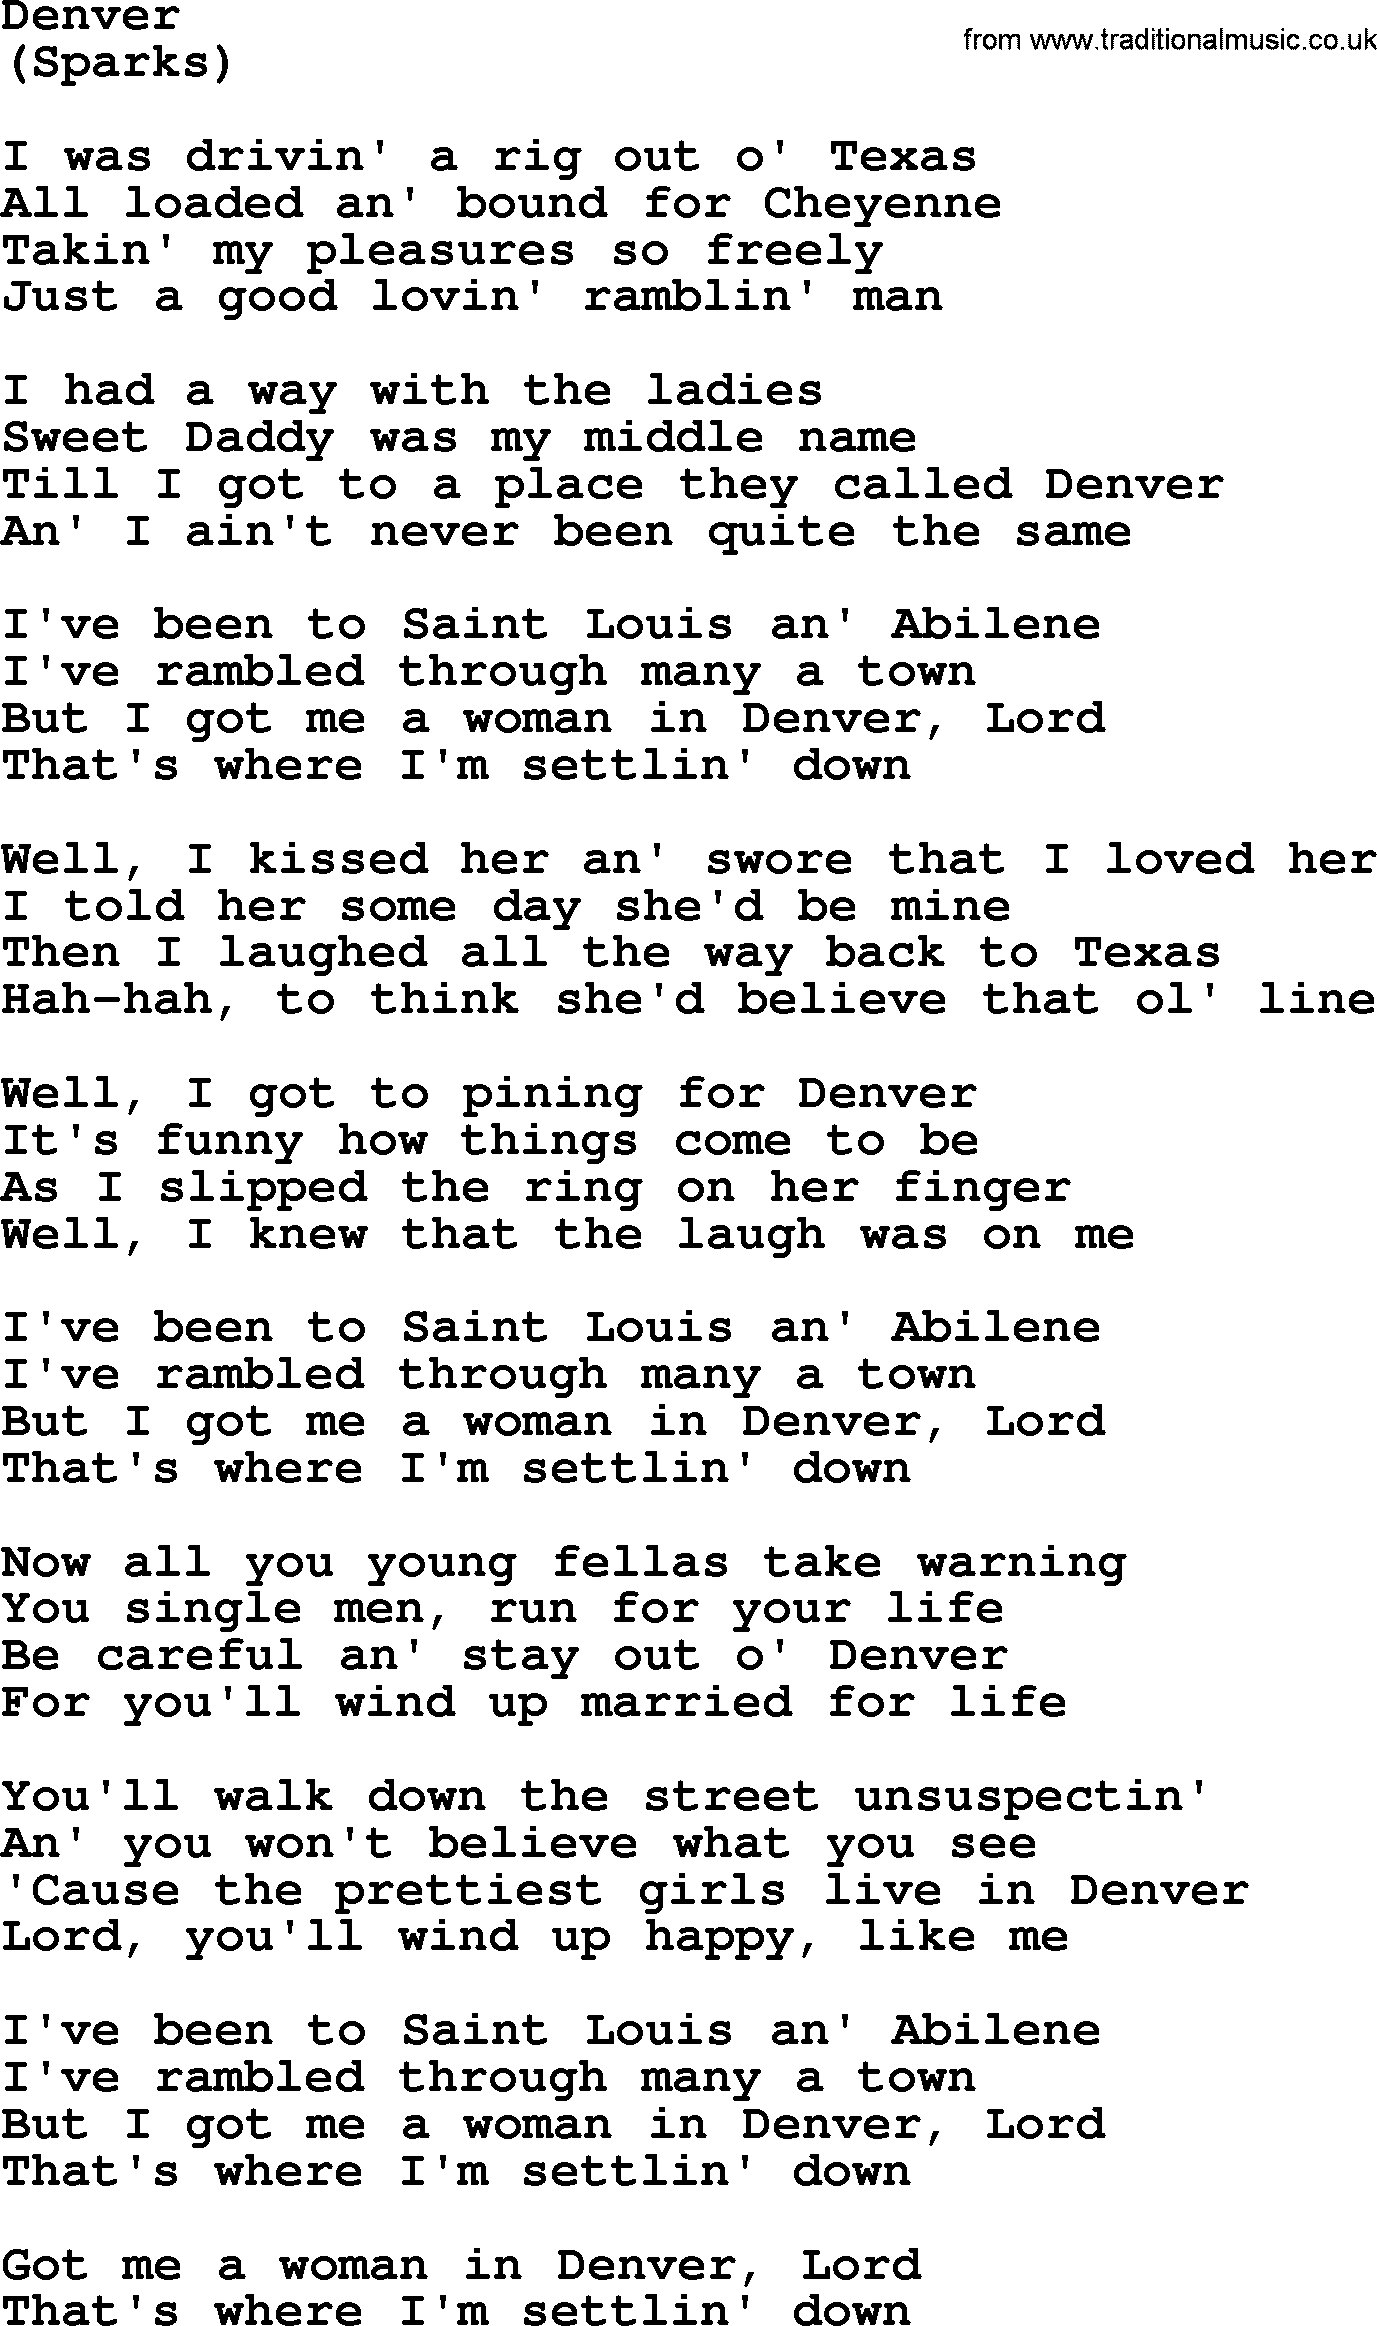 The Byrds song Denver, lyrics